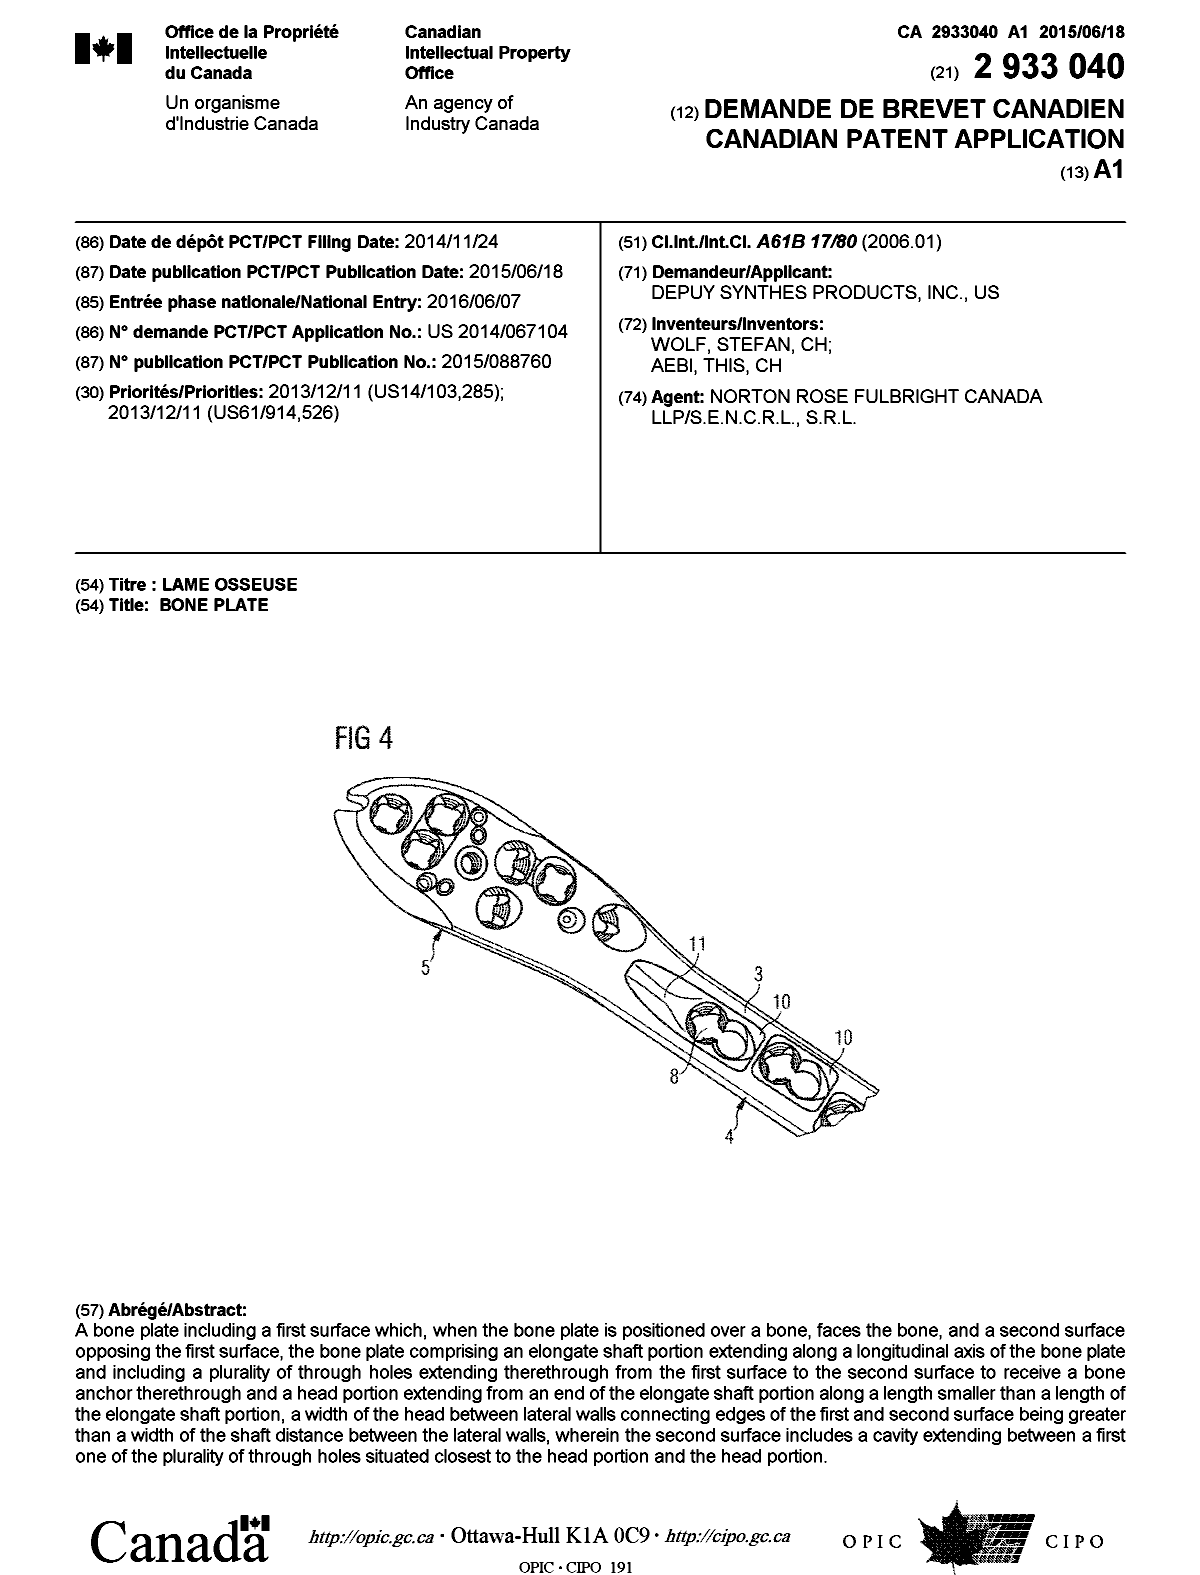 Document de brevet canadien 2933040. Page couverture 20160704. Image 1 de 1